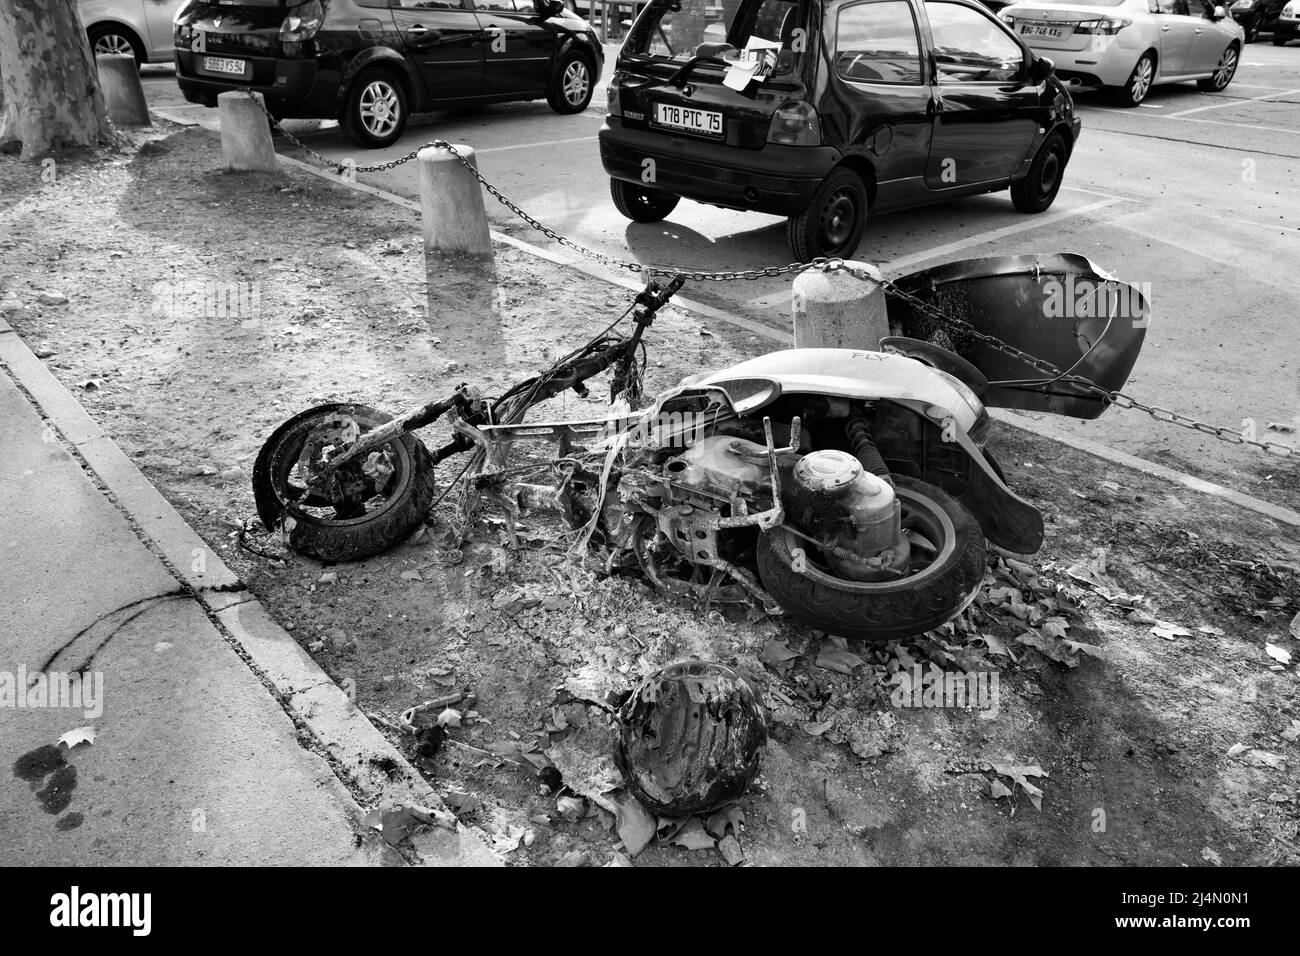 Paris France September 14 2011 Burnt Out Motor Scooter At Car Park